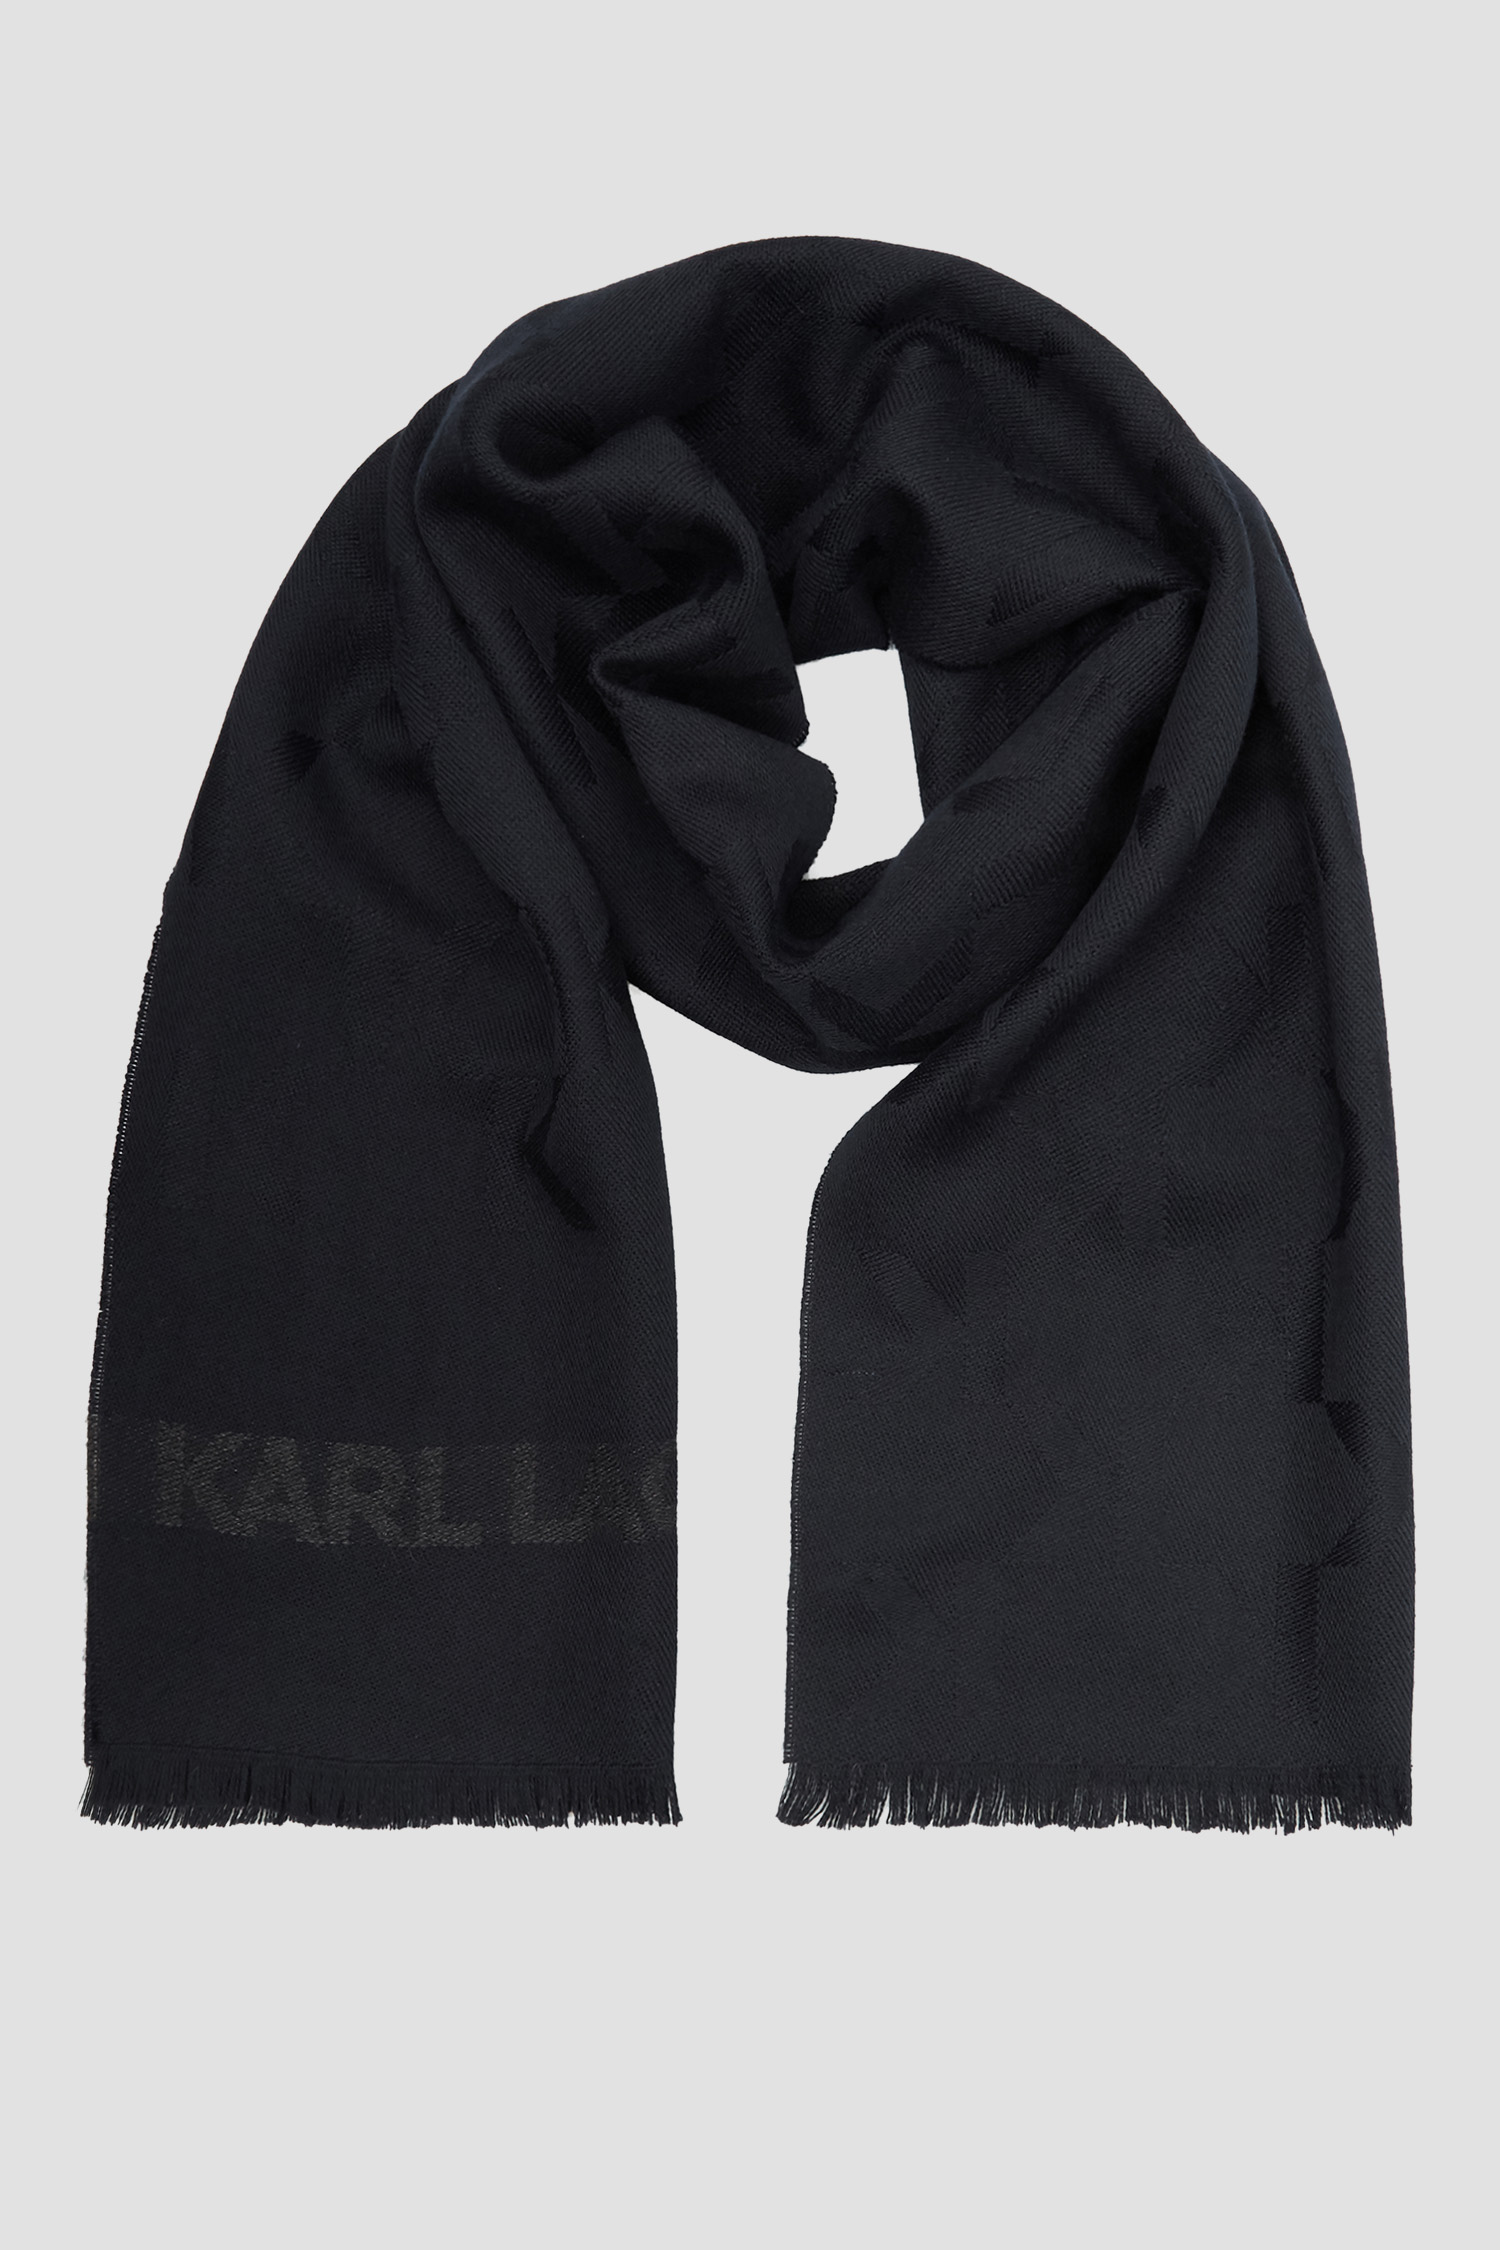 Мужской темно-синий шерстяной шарф Karl Lagerfeld 512135.805001;690